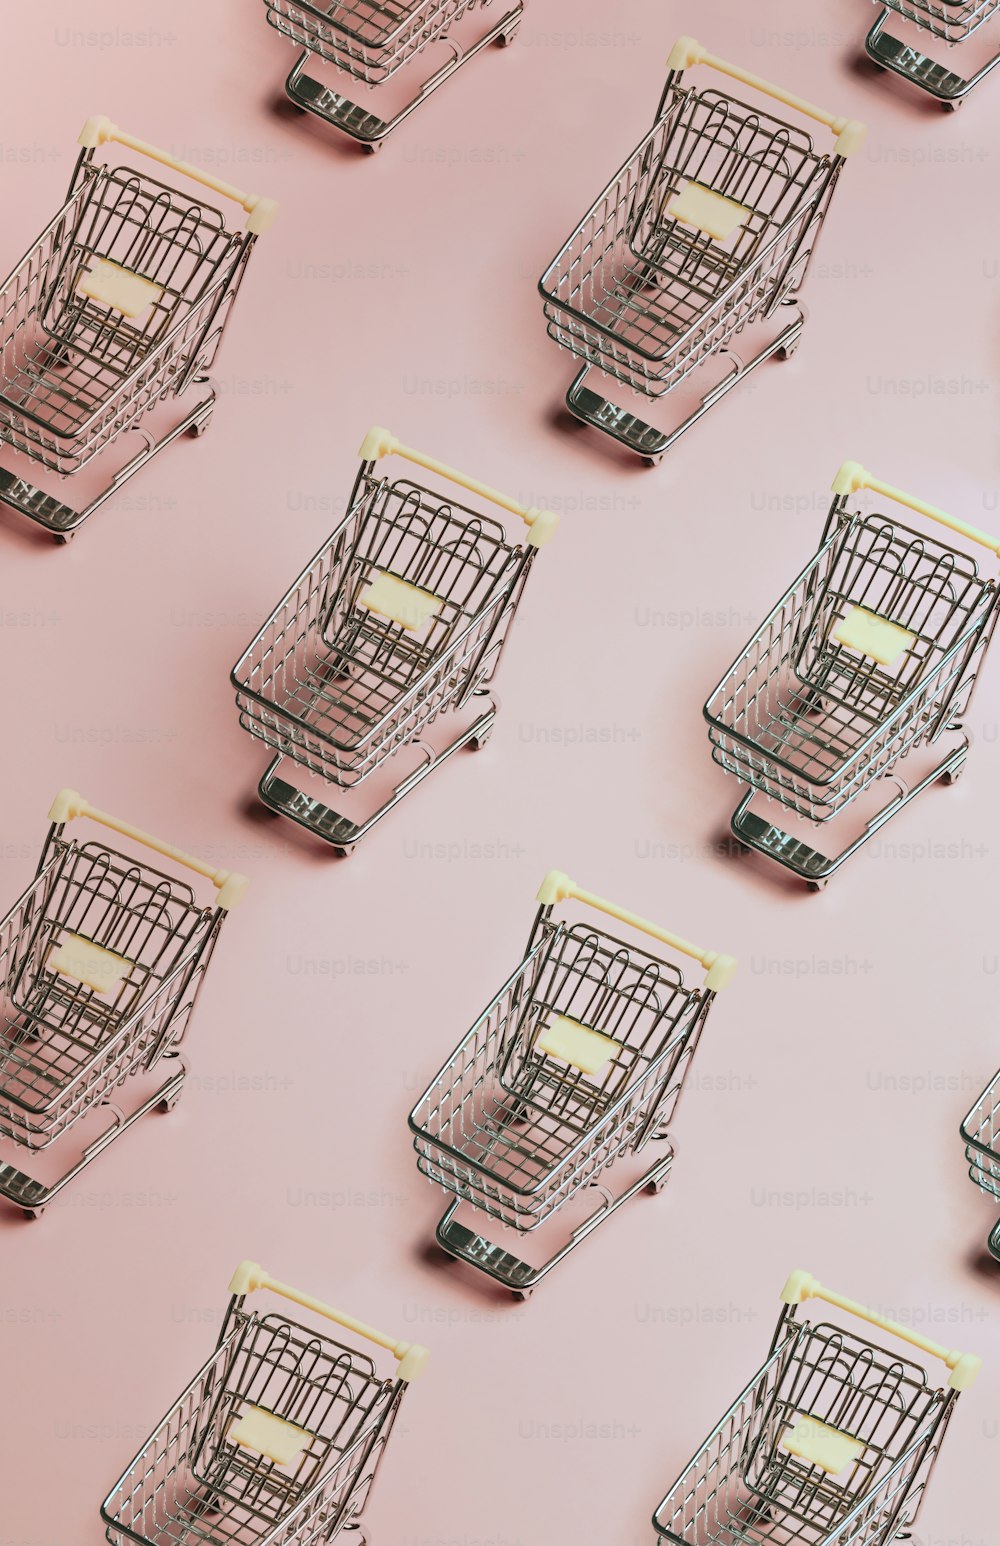 Un gruppo di carrelli della spesa seduti sopra una superficie rosa